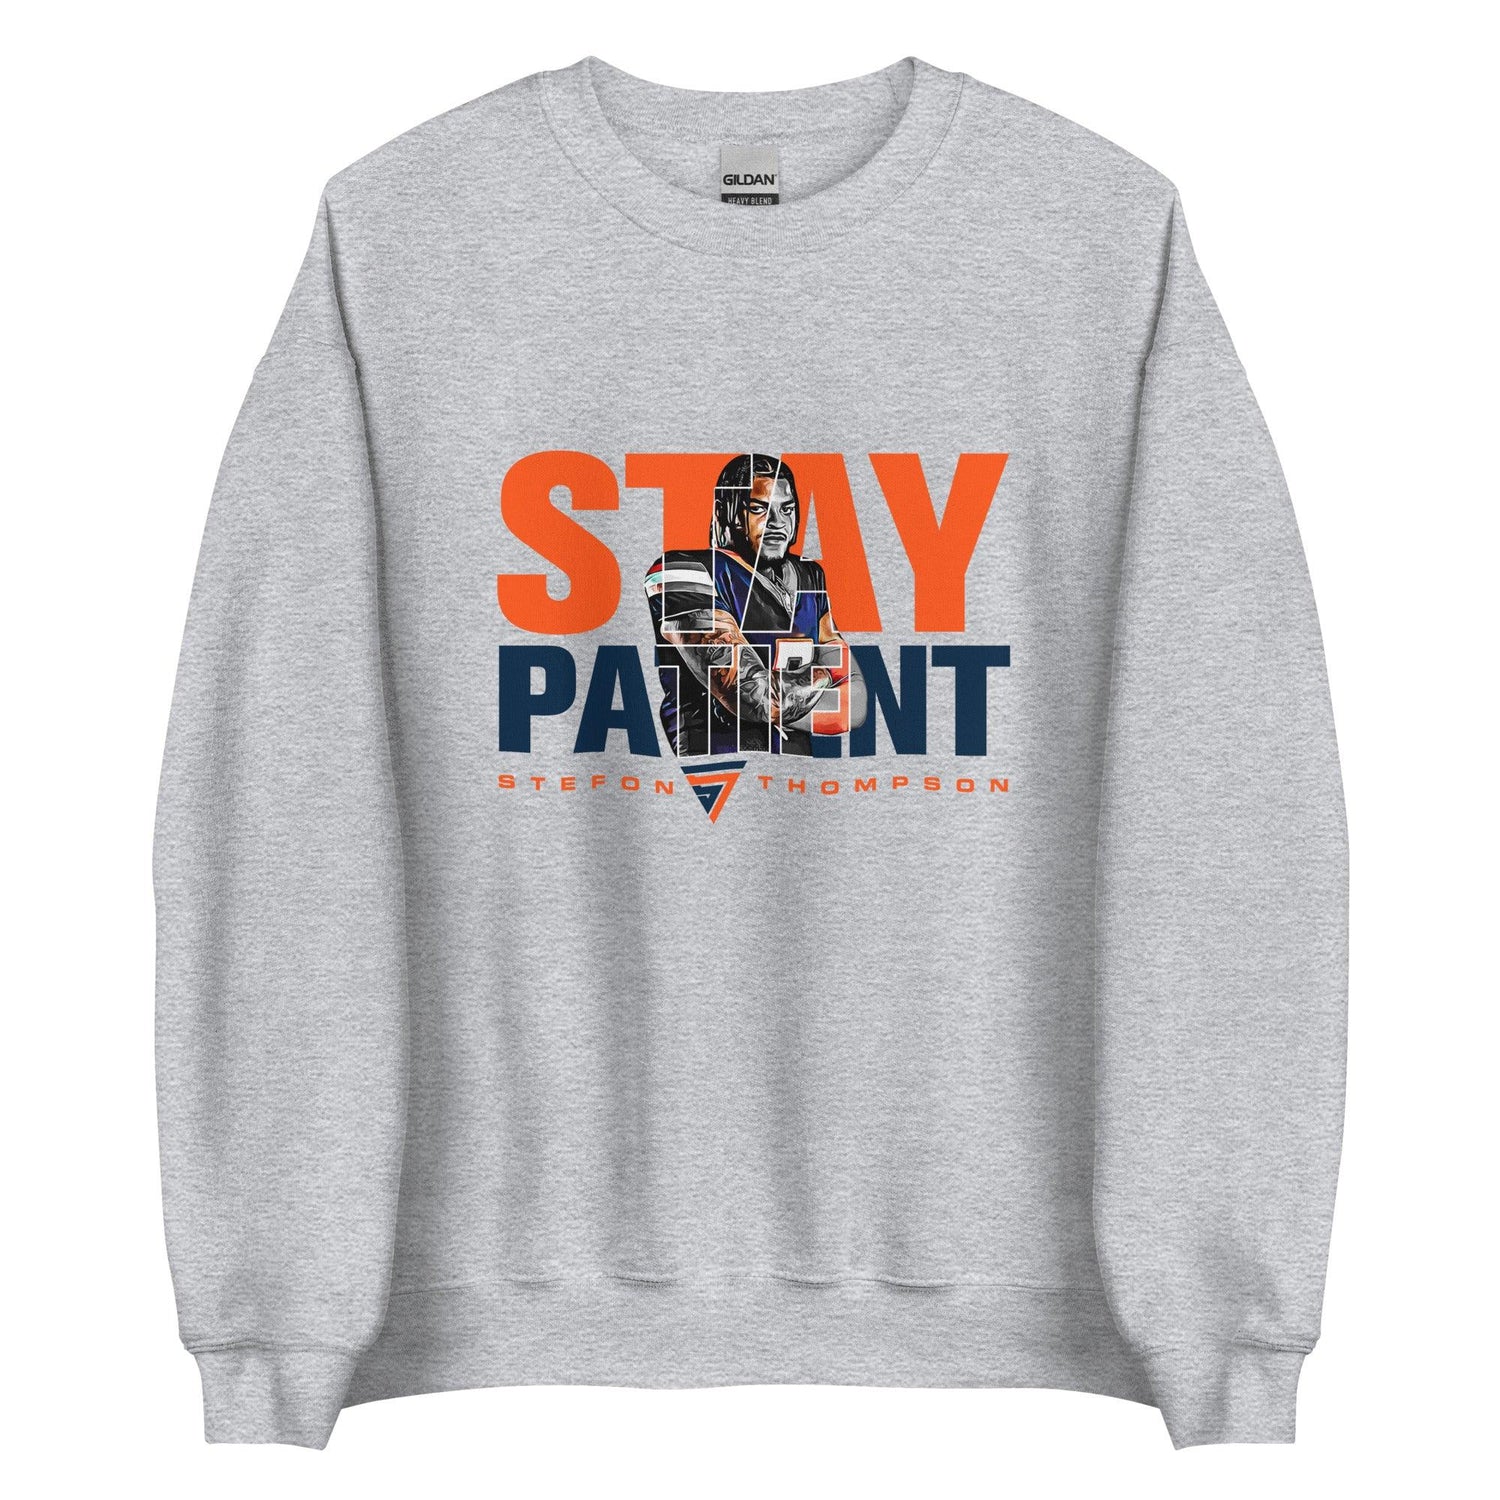 Stefon Thompson "Stay Patient" Sweatshirt - Fan Arch